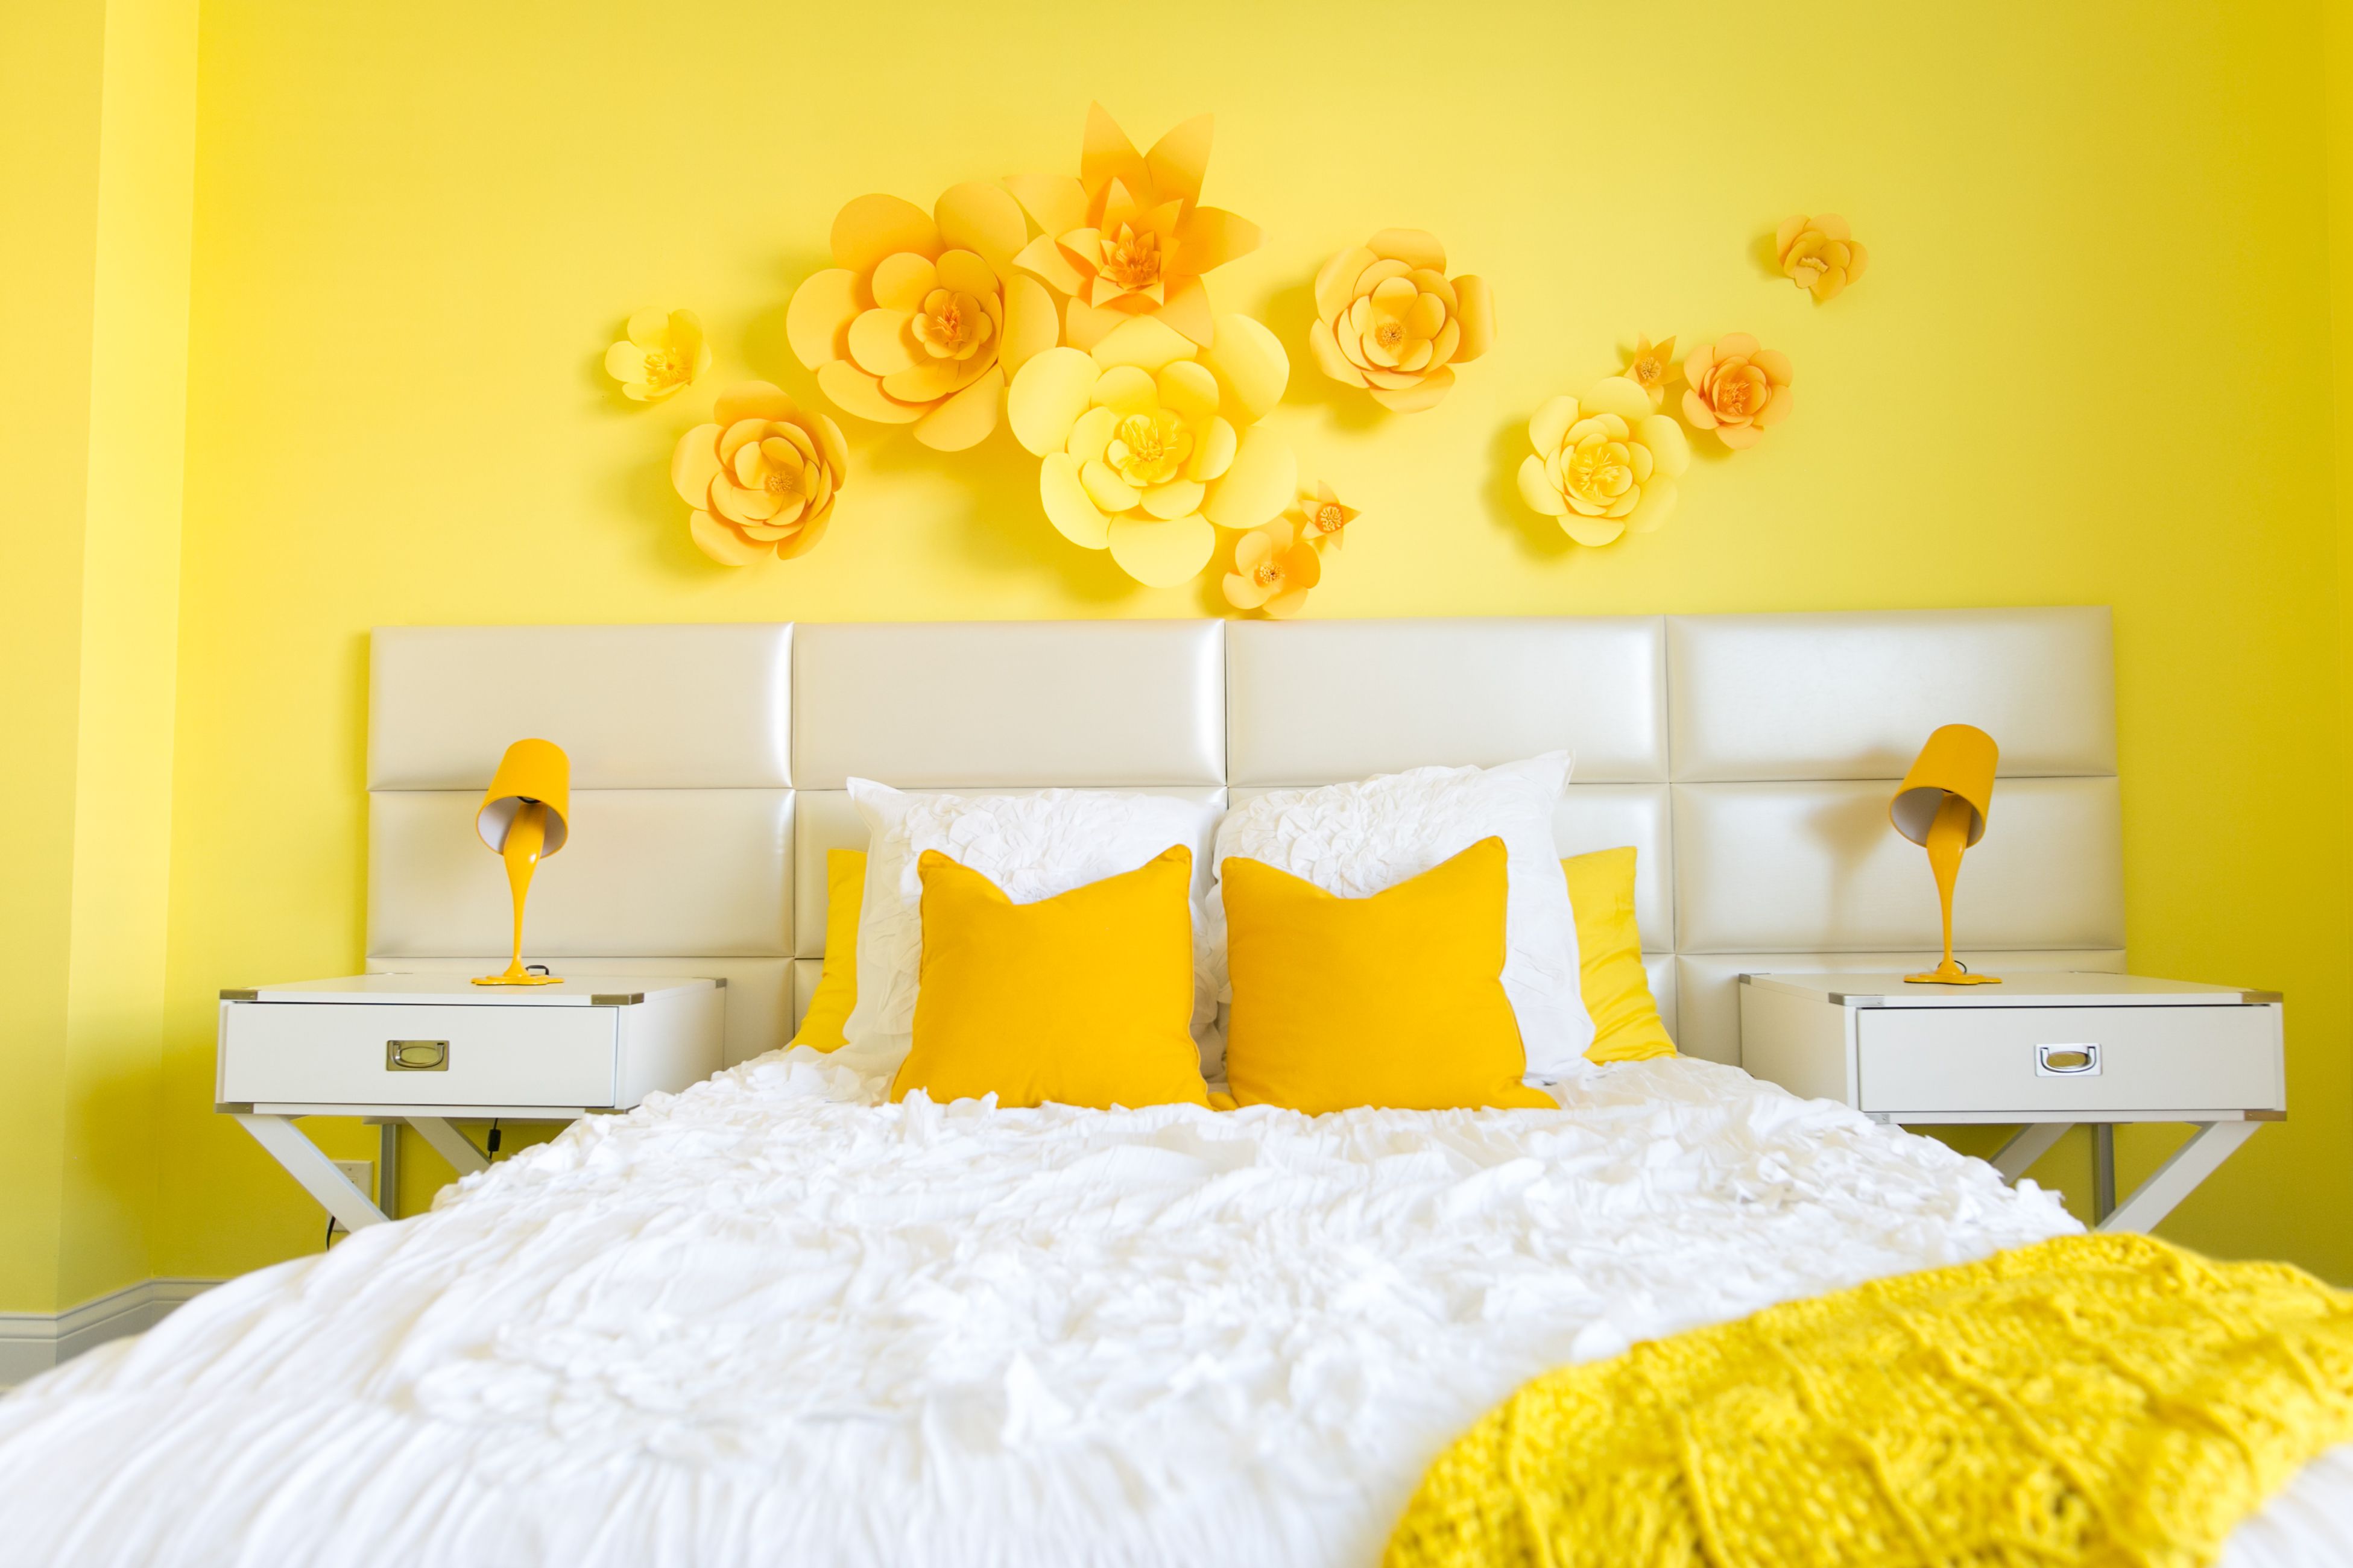 обои лимонного цвета в интерьере спальни